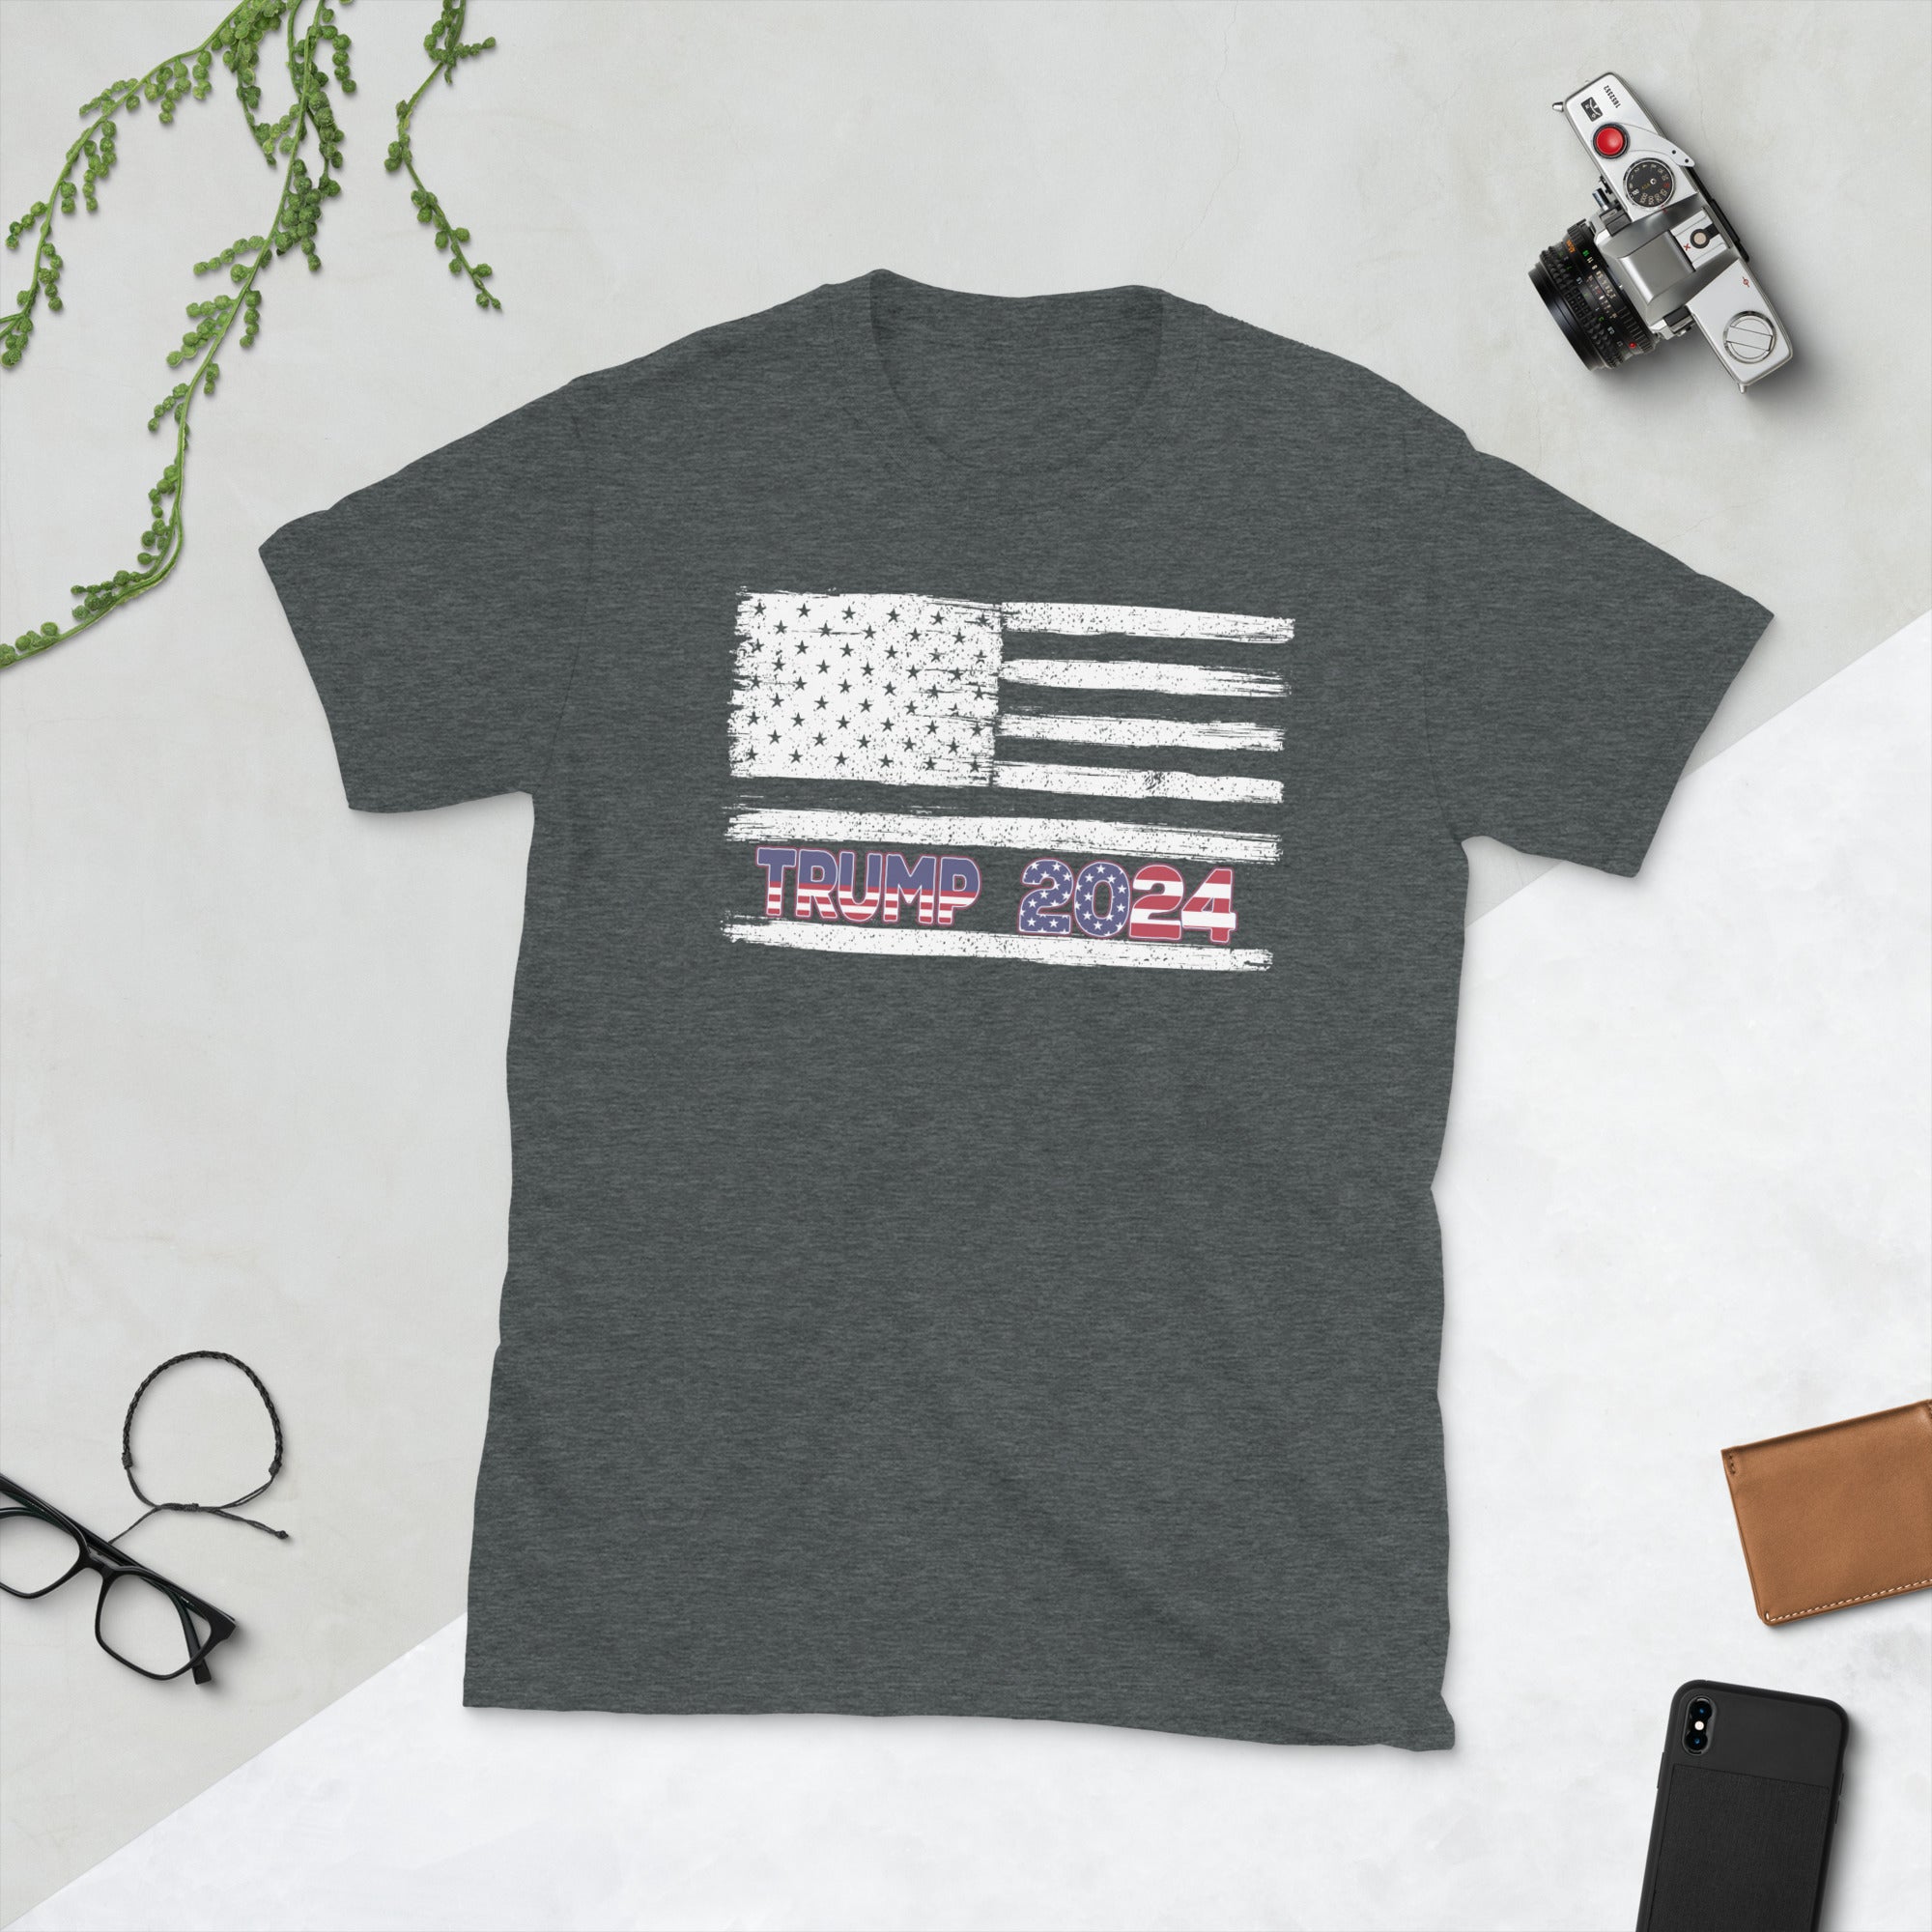 Camisa Trump 2024, camiseta con la bandera estadounidense de EE. UU., regalos patrióticos, camisa republicana, camiseta MAGA Trump 2024, regalos Pro Trump, camiseta de regalo Trump 2024